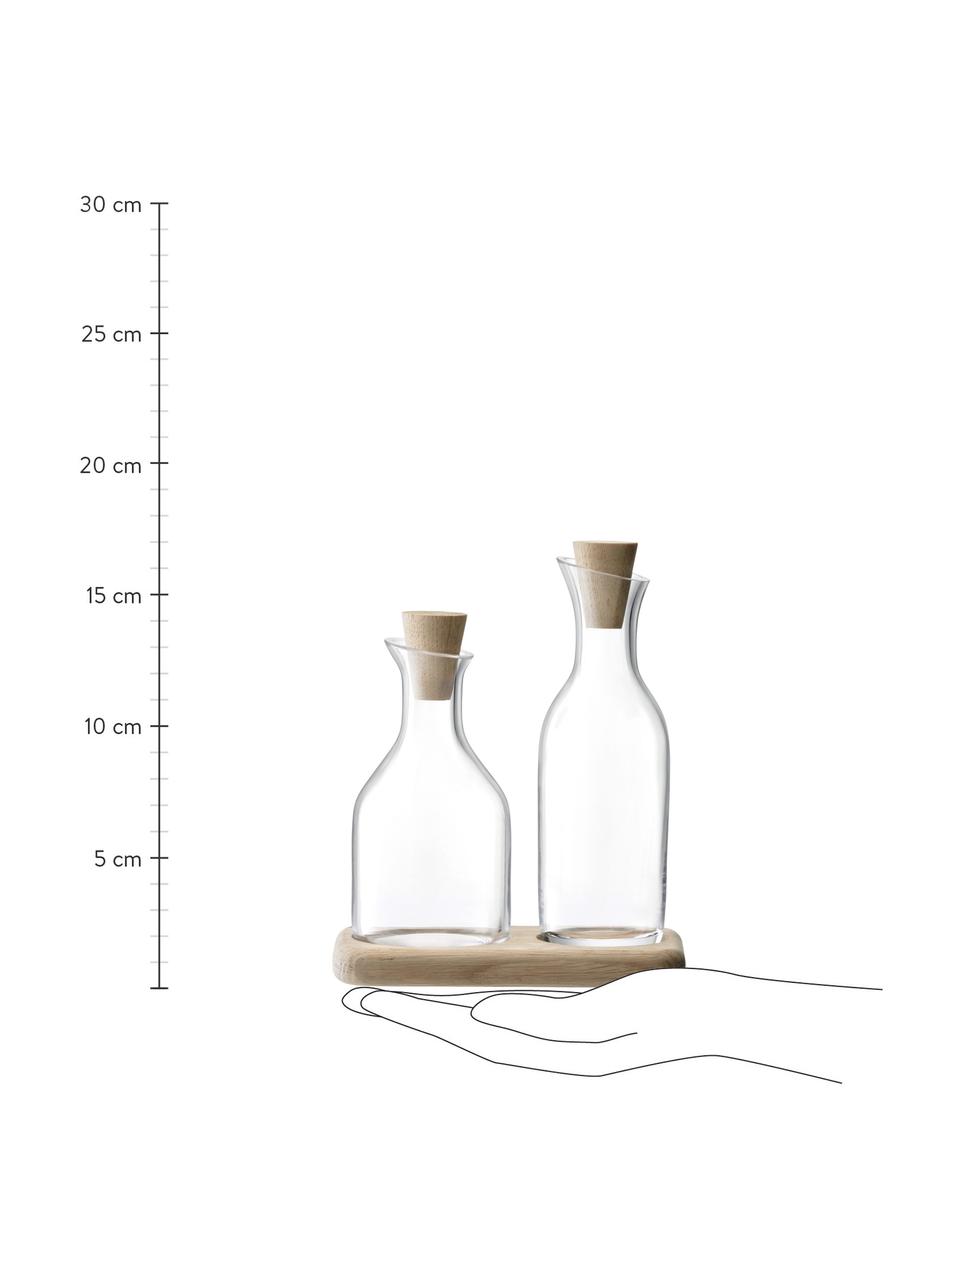 Azijn- en oliedispenser Serve van glas en eikenhout, 3-delig, Onderbord: eikenhout, Dispender: transparant. Onderbord: eikenhout. Stop: eikenhout, Set met verschillende formaten